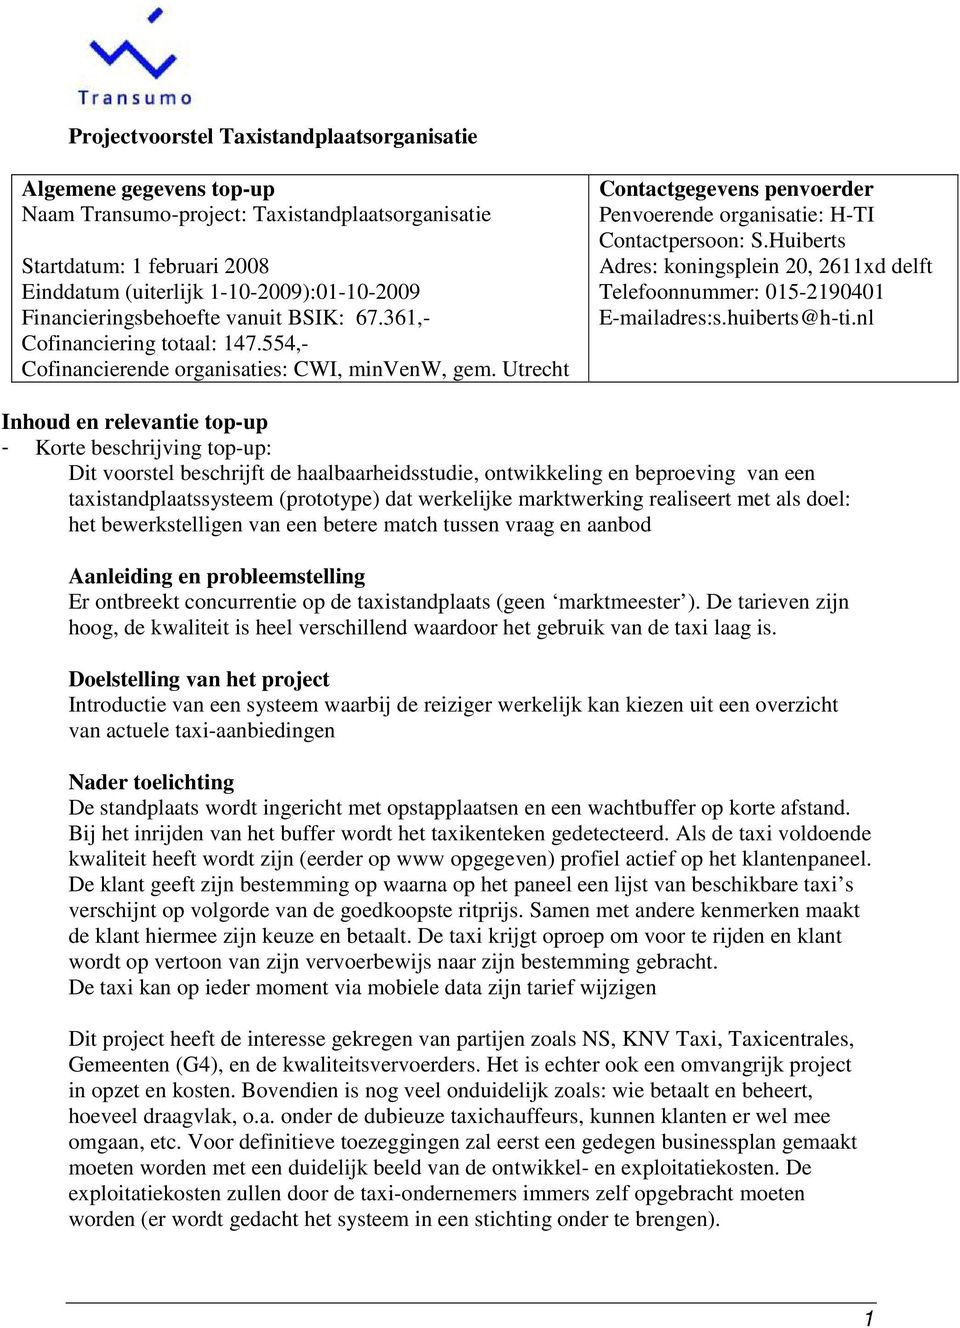 Utrecht Contactgegevens penvoerder Penvoerende organisatie: H-TI Contactpersoon: S.Huiberts Adres: koningsplein 20, 2611xd delft Telefoonnummer: 015-2190401 E-mailadres:s.huiberts@h-ti.